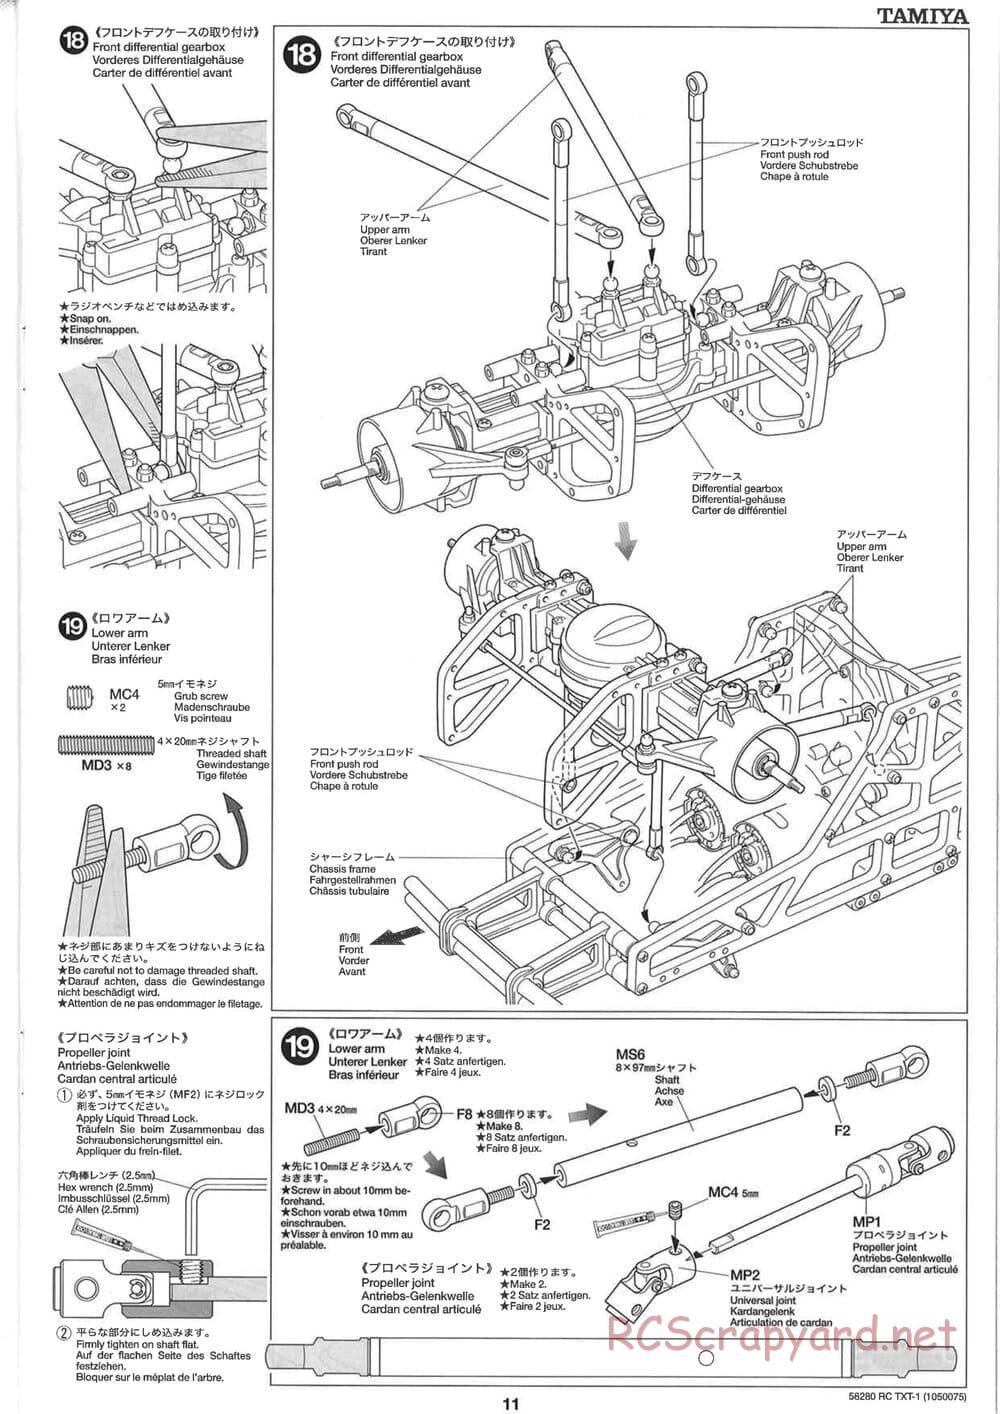 Tamiya - TXT-1 (Tamiya Xtreme Truck) Chassis - Manual - Page 11